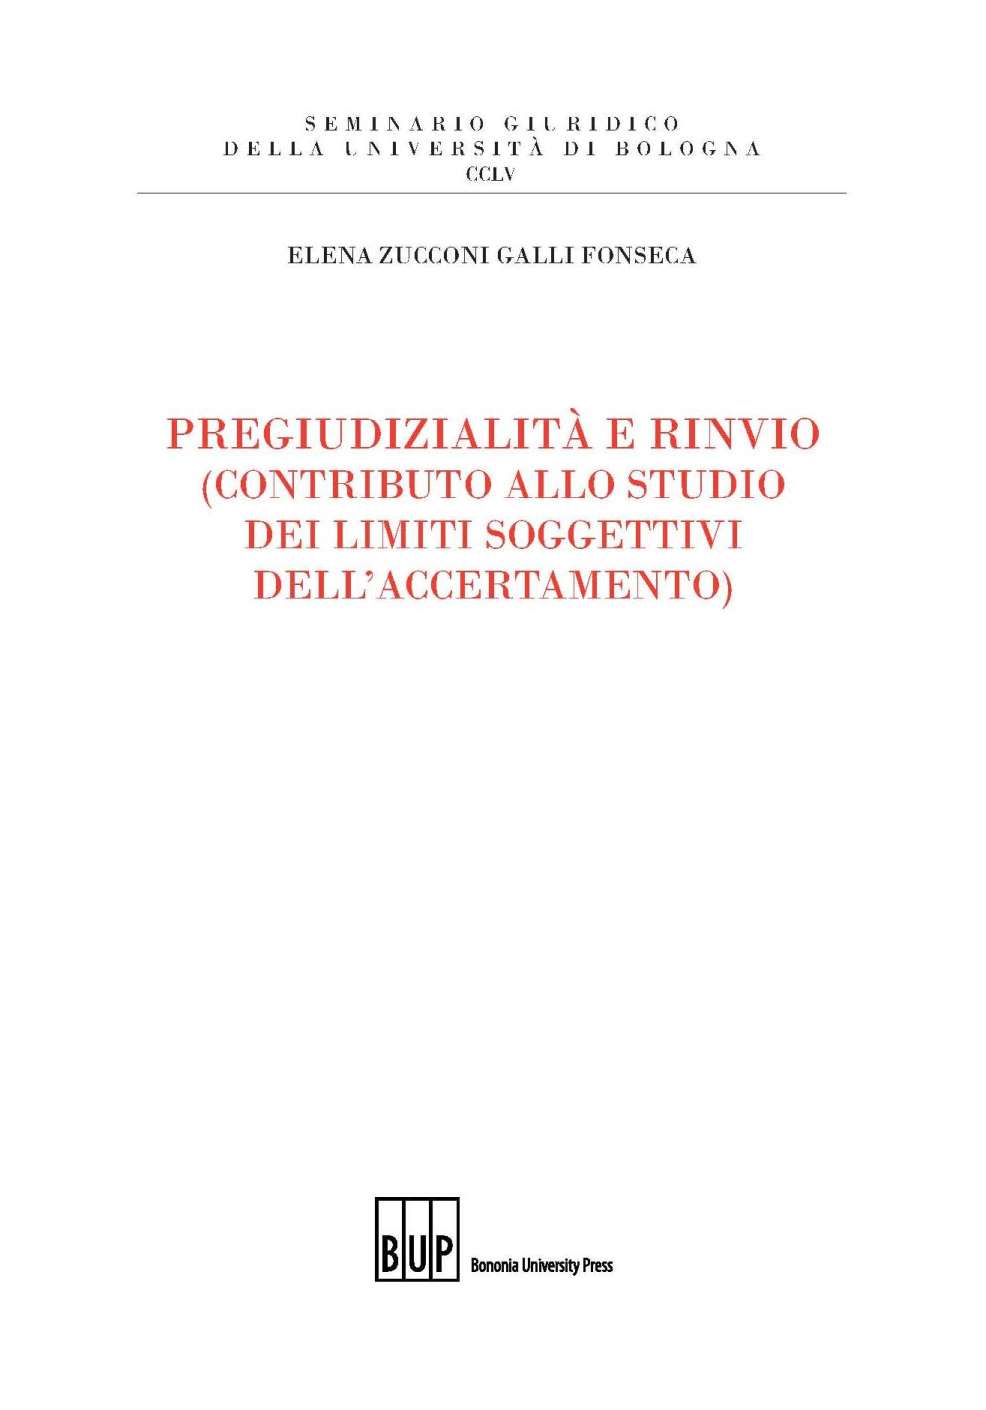 Pregiudizialità e rinvio (contributo allo studio dei limiti soggettivi dell'accertamento) - Bologna University Press